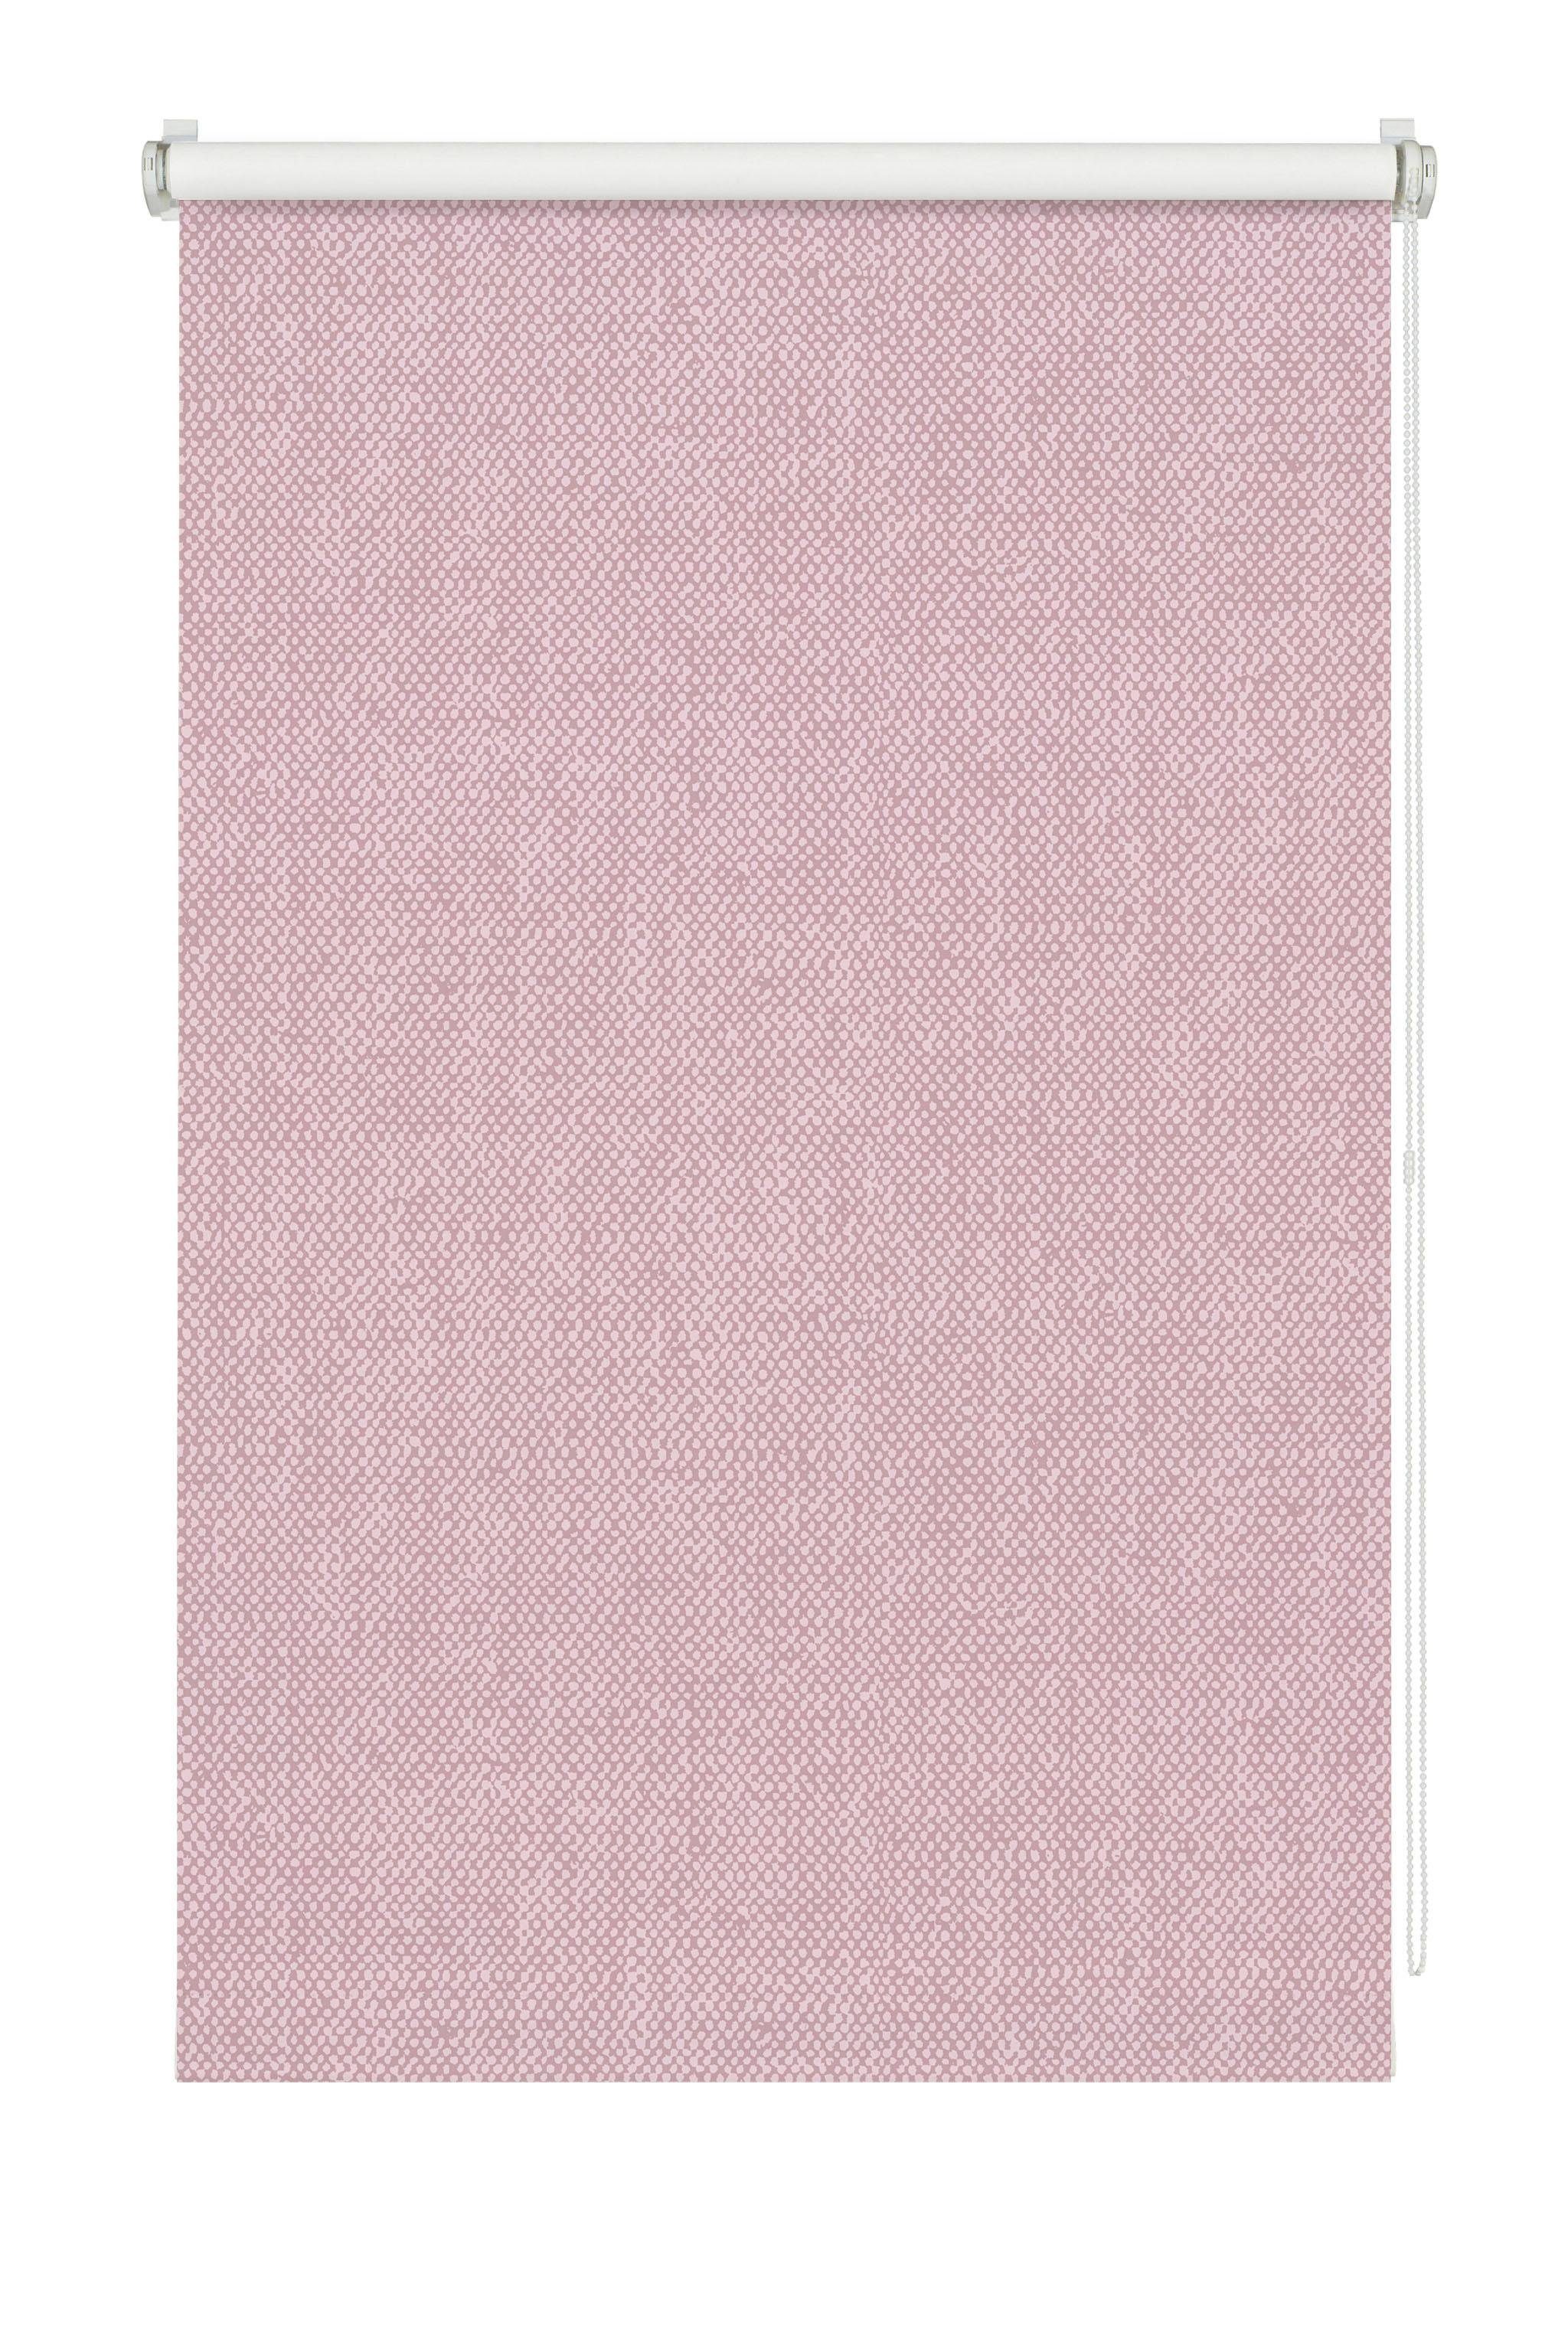 wohnidee rolgordijn met zijbediening rolgordijn verduistering kleefmontage - schroefmontage mogelijk (1 stuk) roze